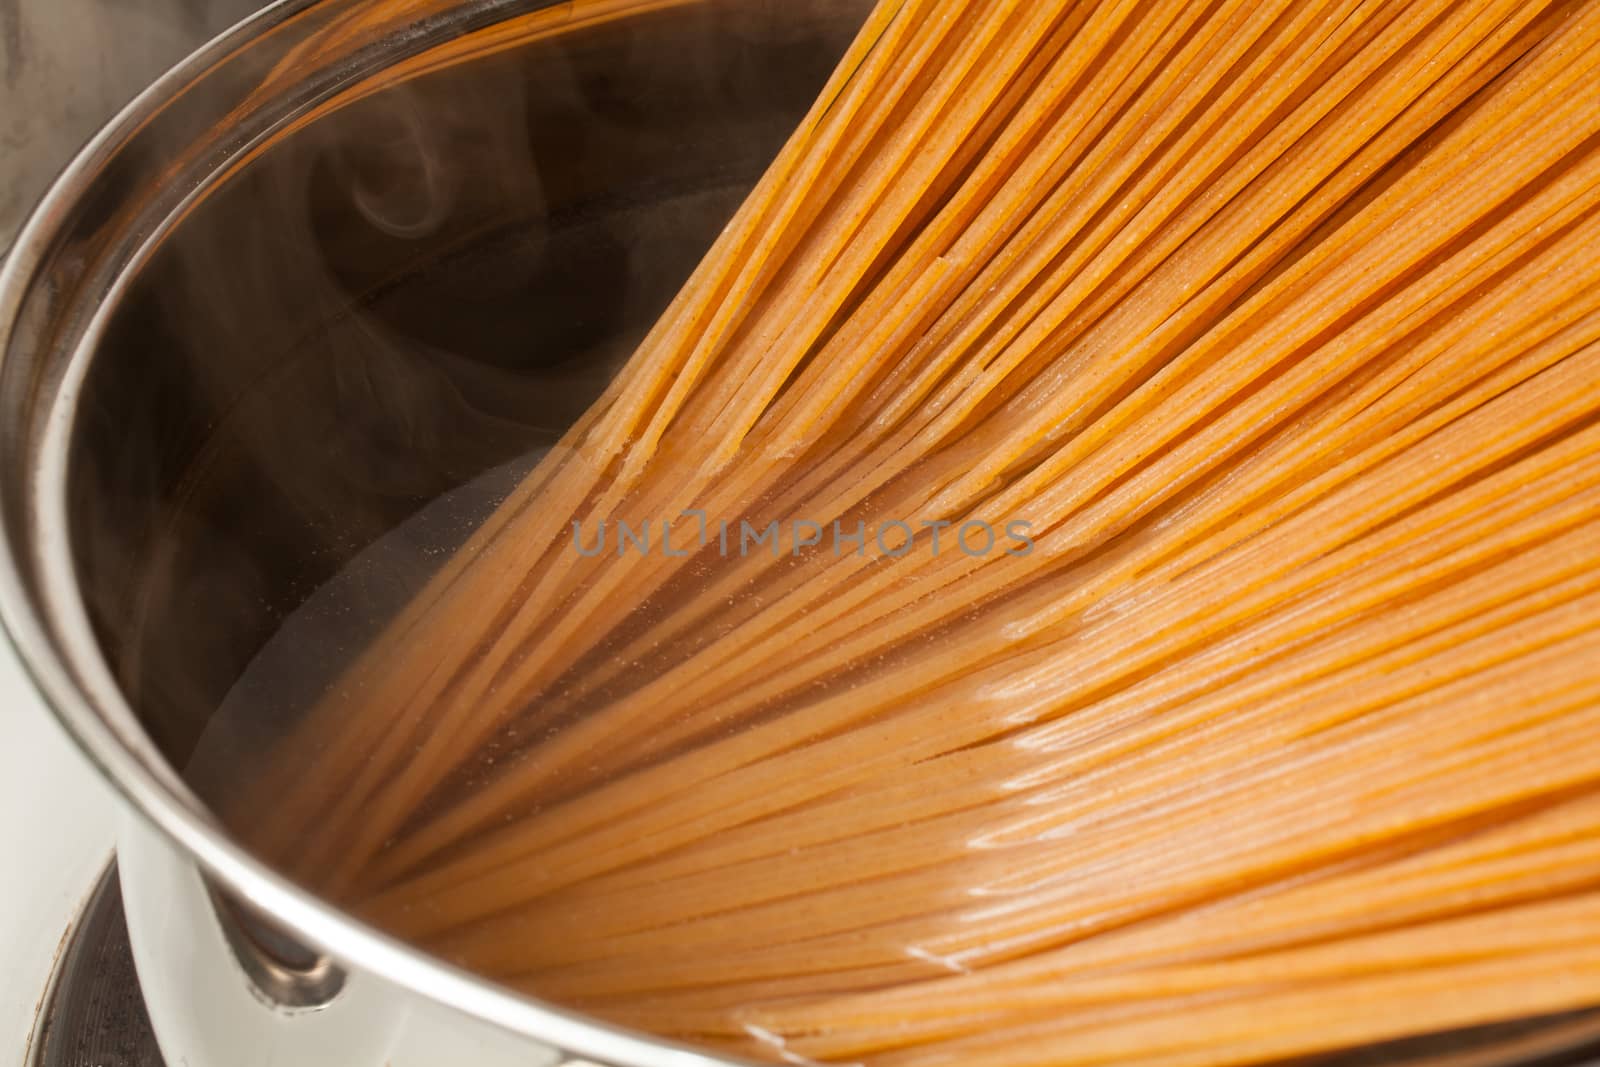 Wholemeal spaghetti into the casserole